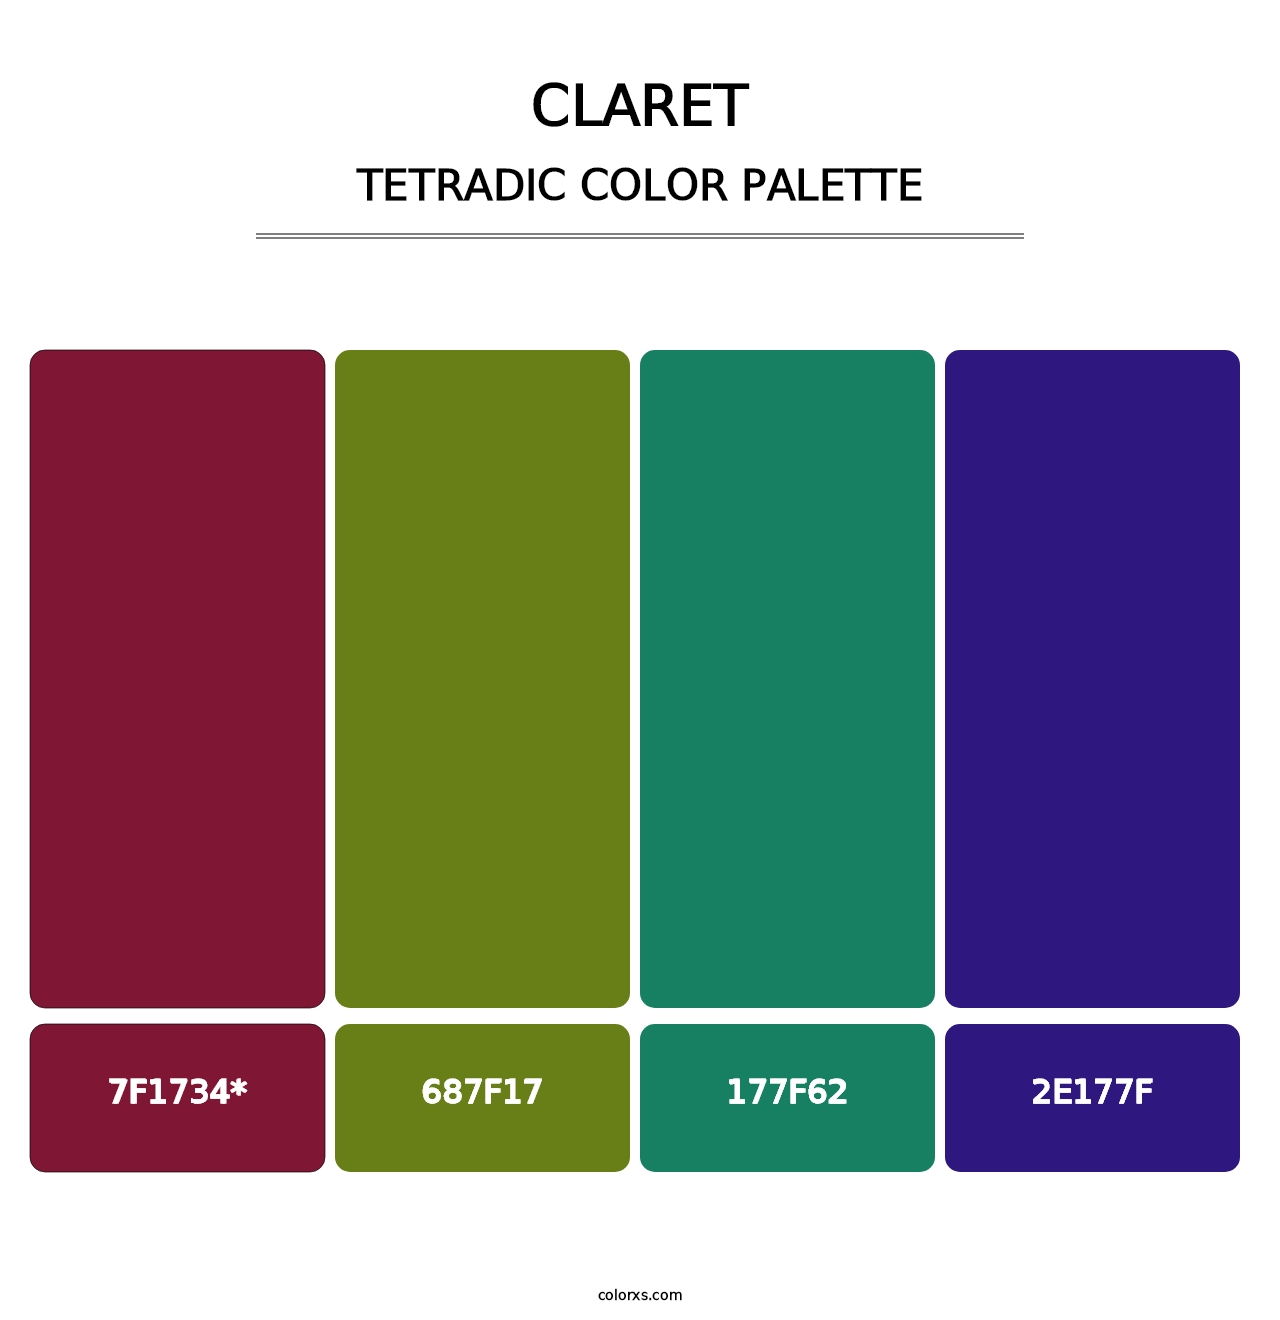 Claret - Tetradic Color Palette